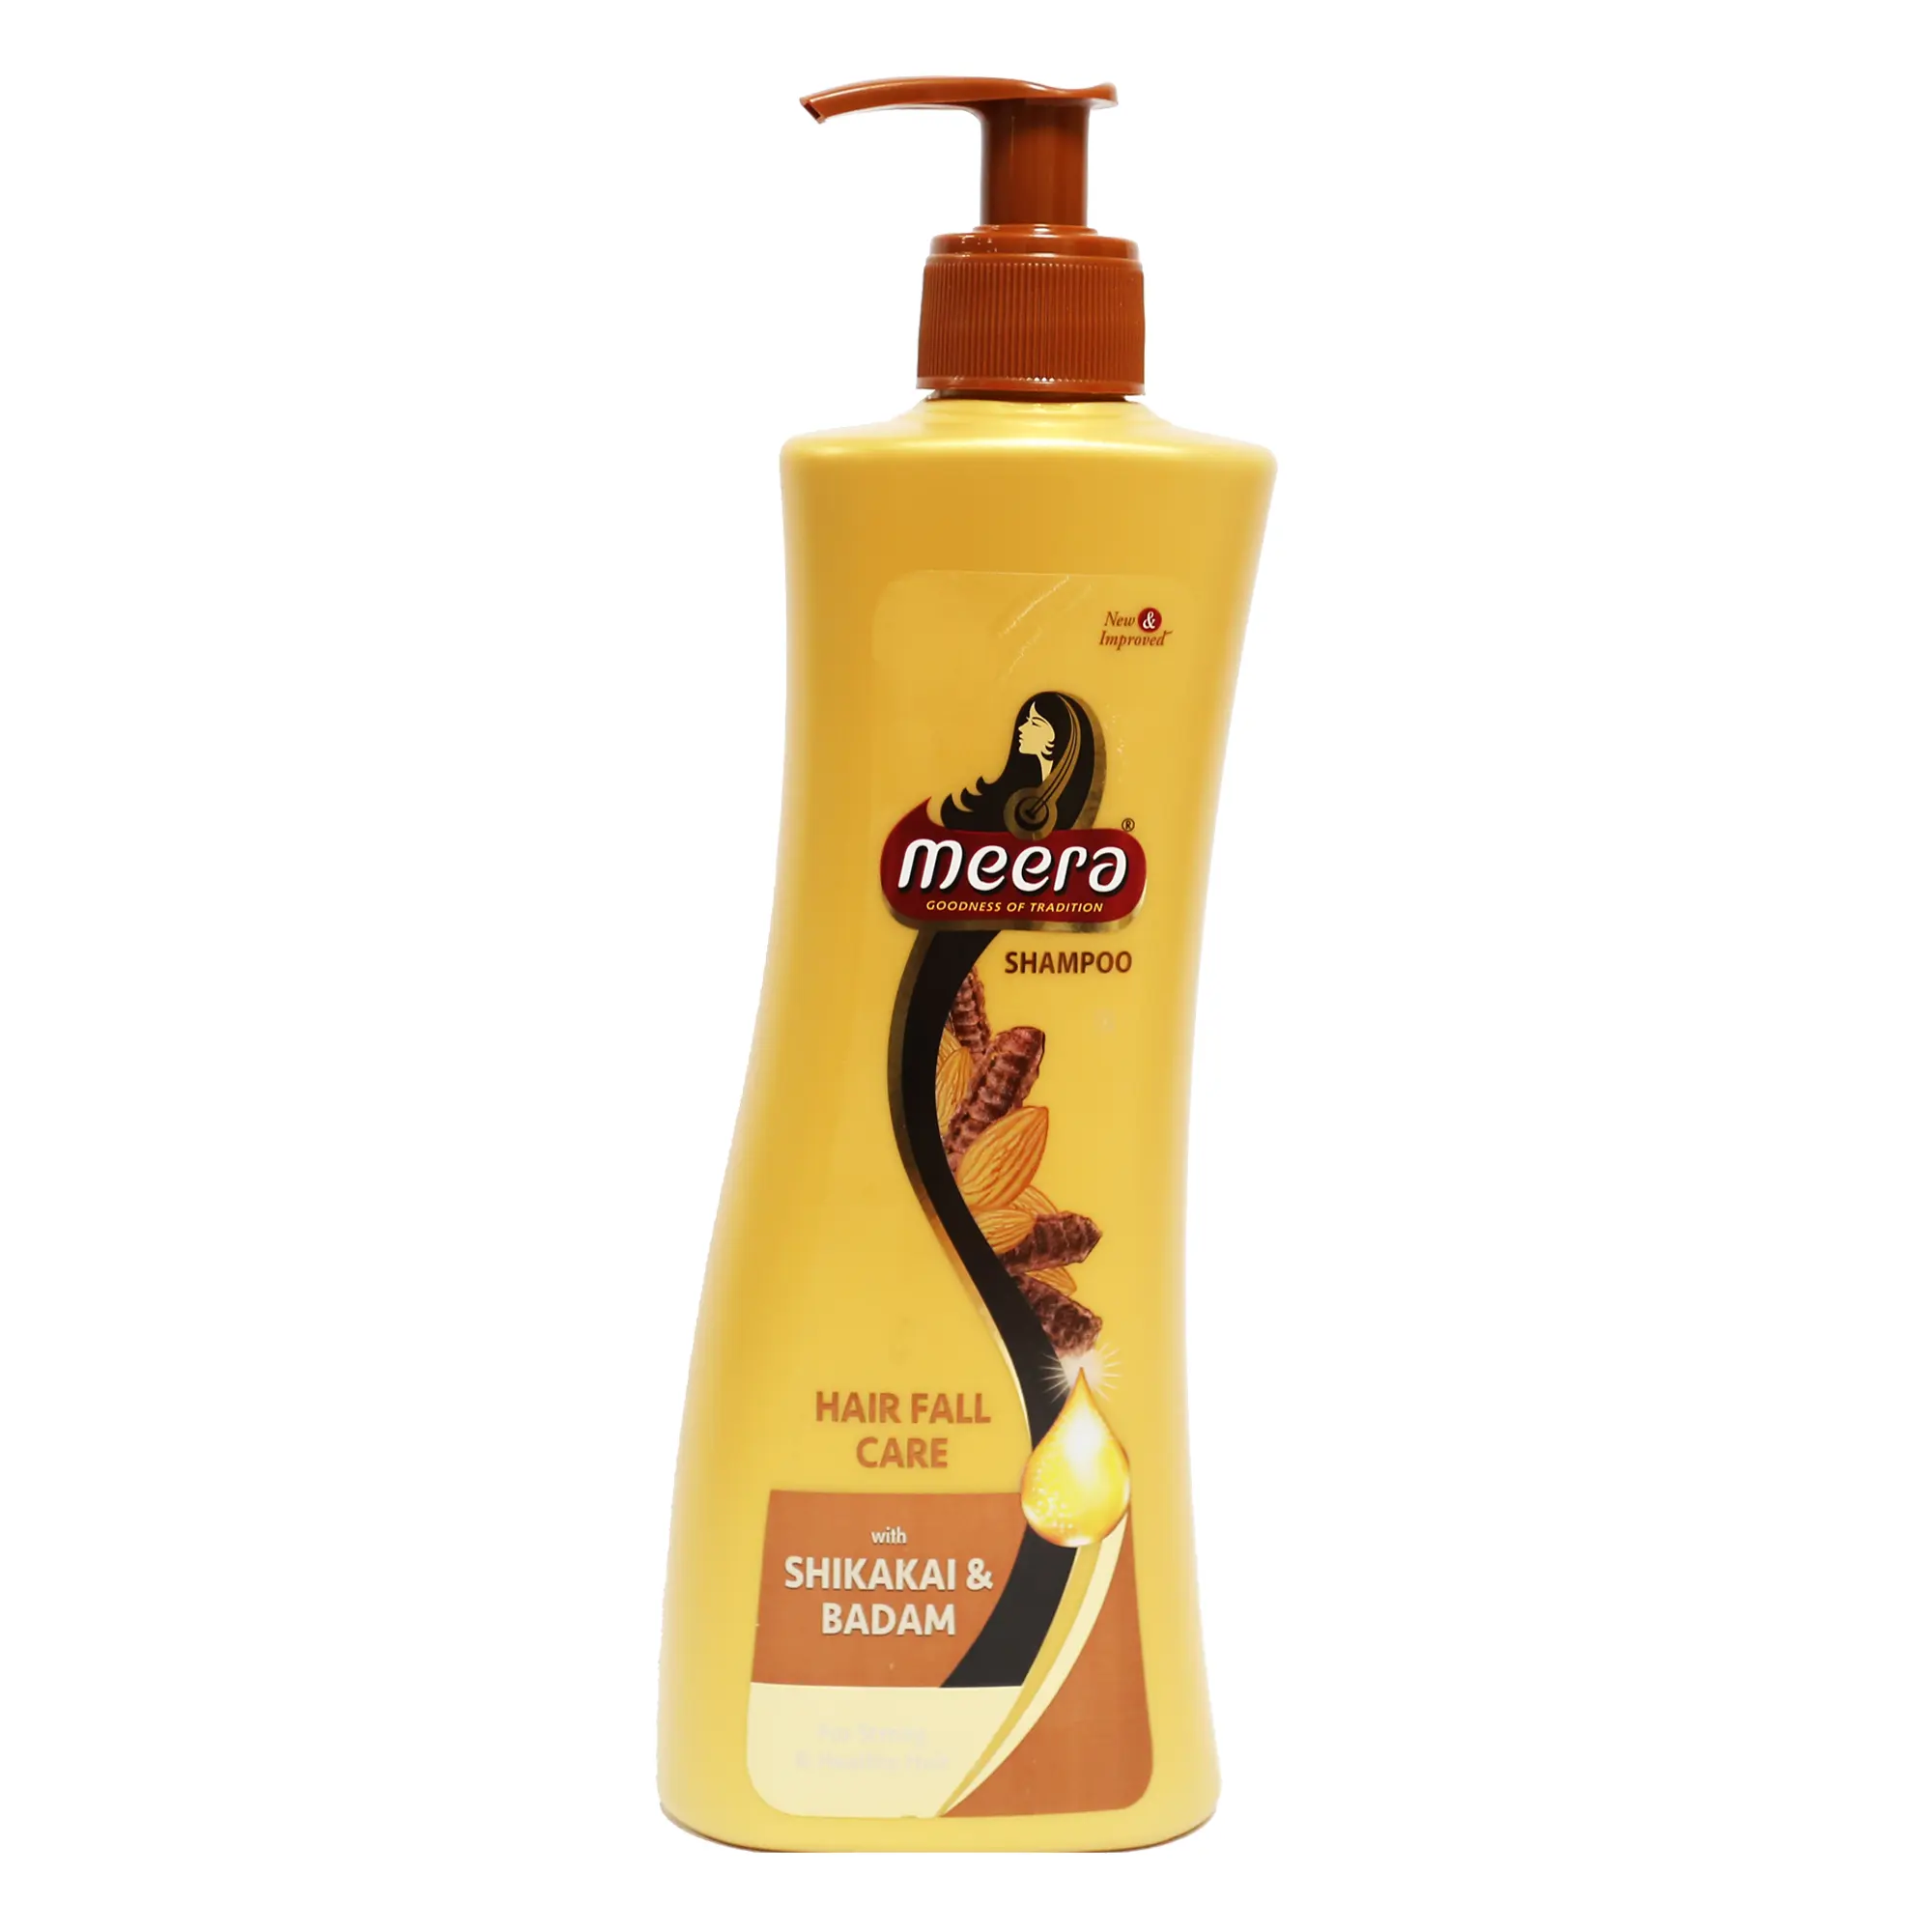 שמפו צמחים מירה 340 מ""ל 100% איכות טבעית טיפוח נשירת שיער לגברים ולנשים עם שיקאקי ושקדים